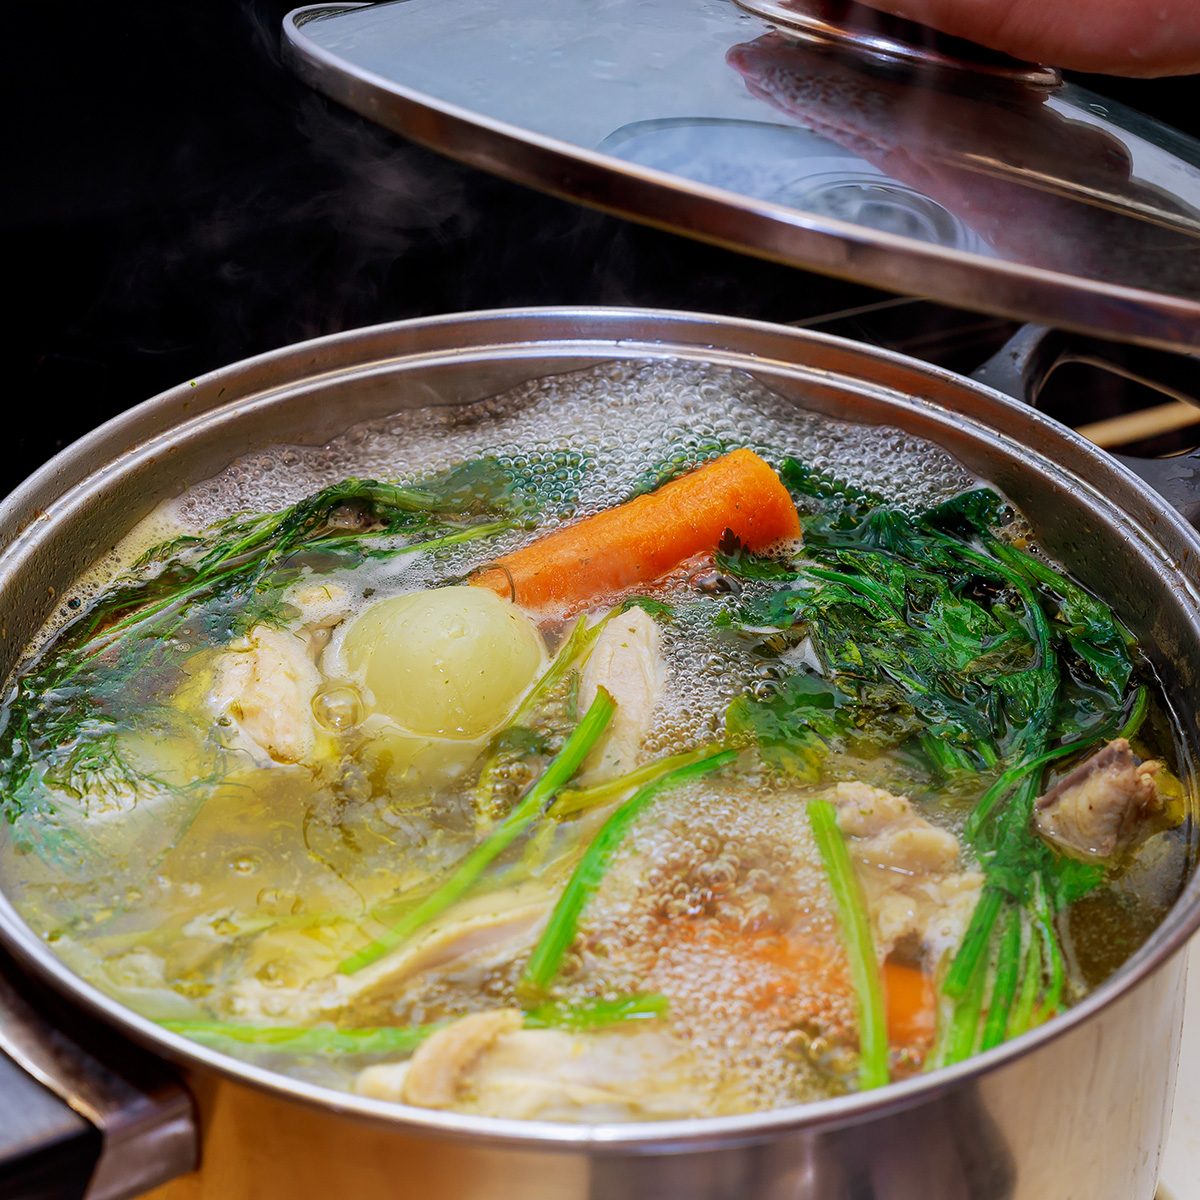 锅中准备鸡骨汤的材料鸡肉，洋葱，芹菜根，胡萝卜，欧芹